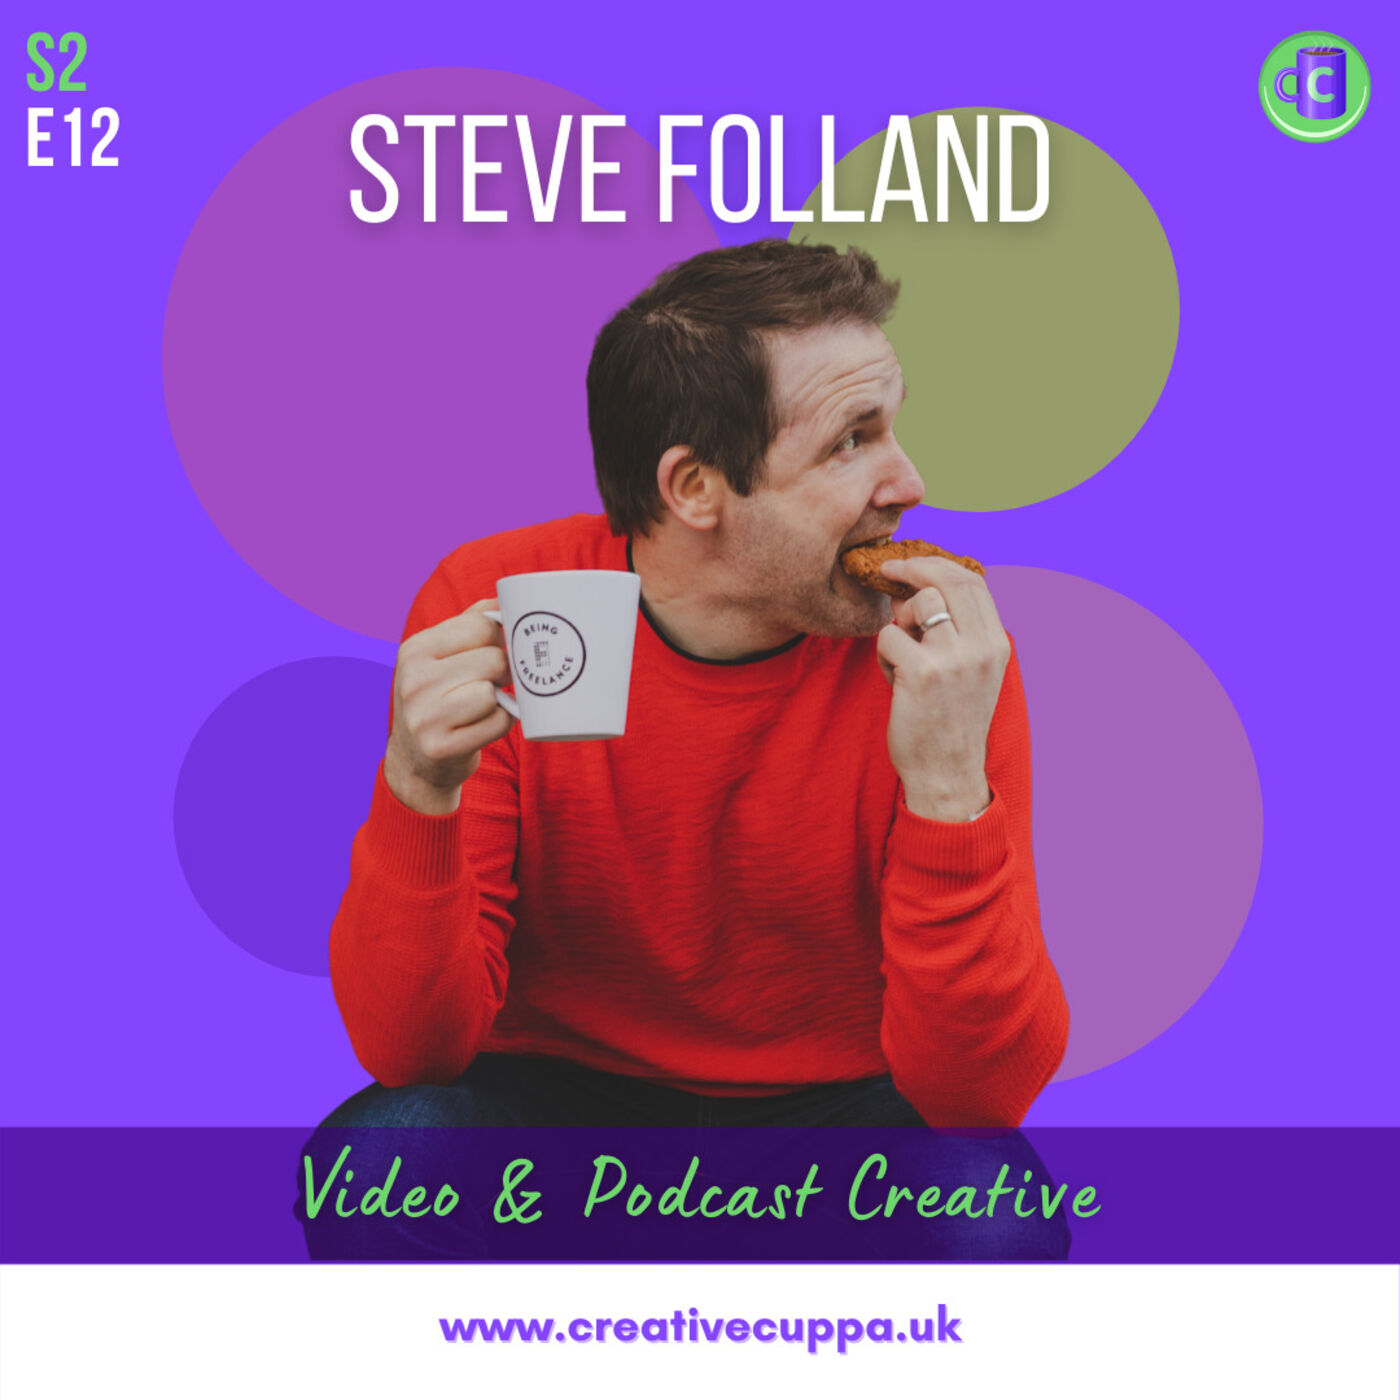 Steve Folland: video & podcast creative